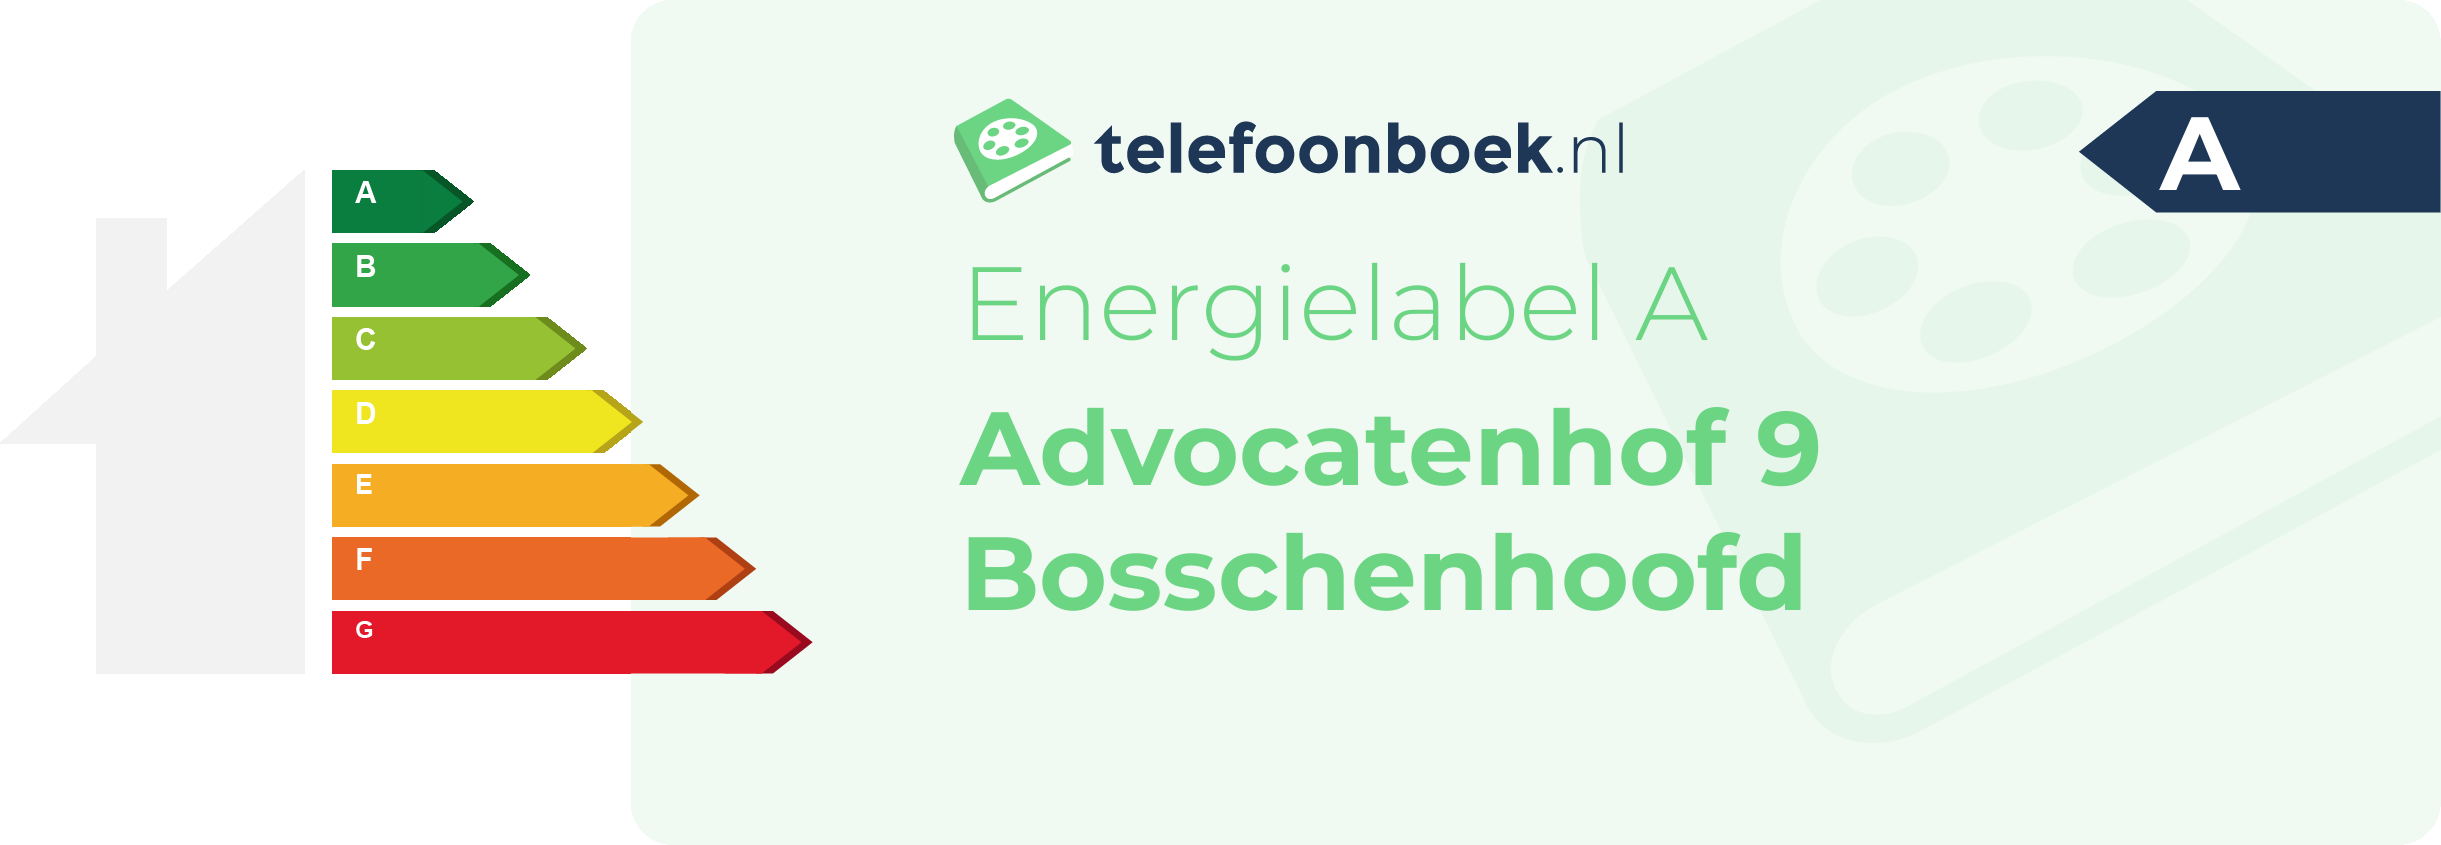 Energielabel Advocatenhof 9 Bosschenhoofd